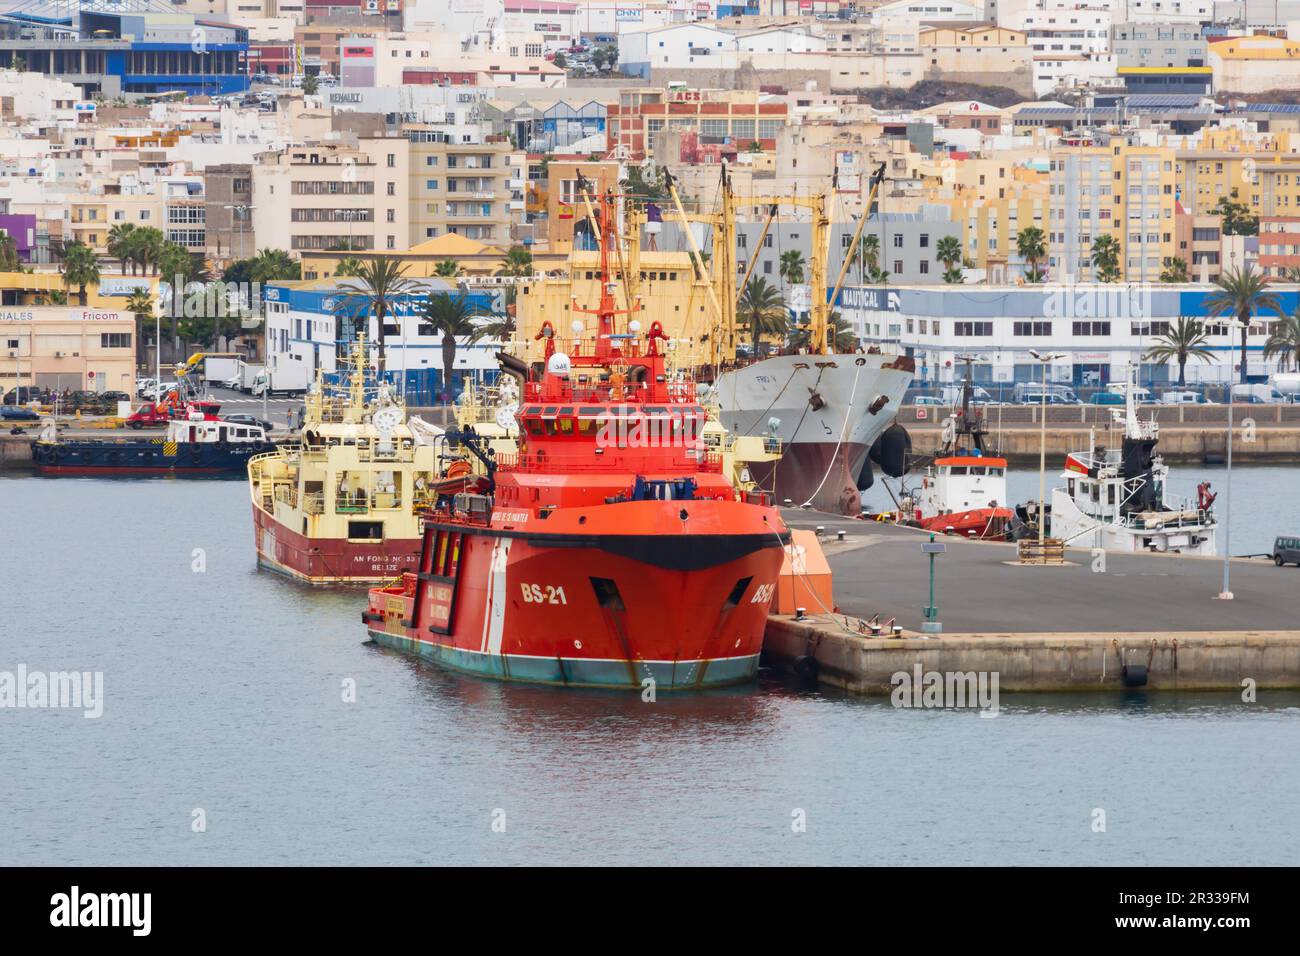 Orange, Deep sea rescue, salvage, fire and pollution control vessel, Miguel de Cervantes, moored in Las Palmas harbour. Las Palmas, Gran Canaria, Spai Stock Photo